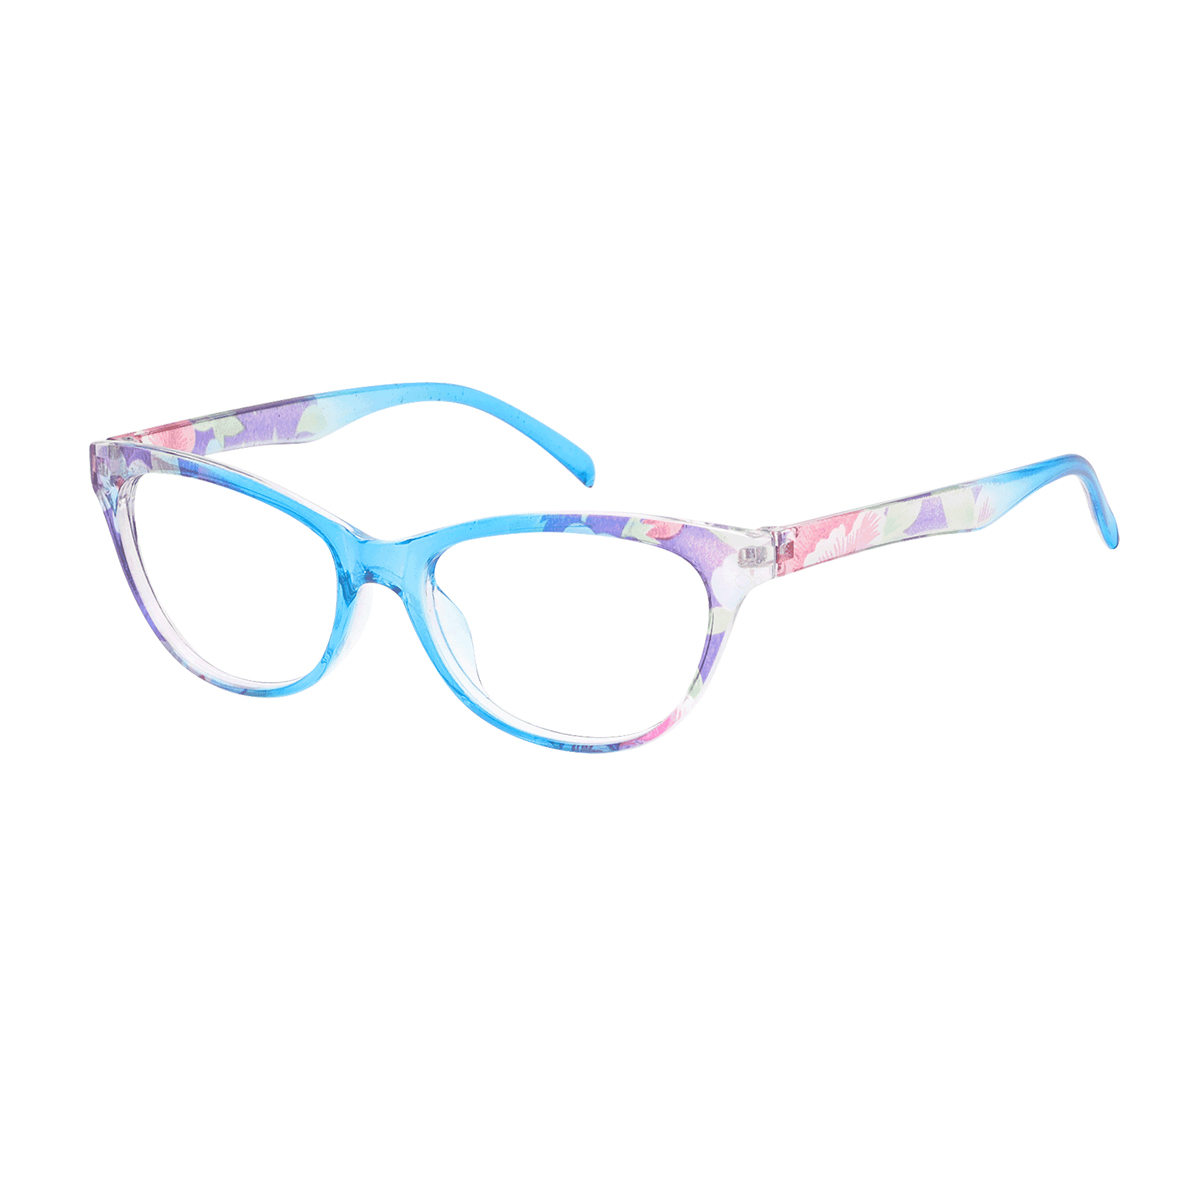 Bonnie - Cat-eye Blue Reading Glasses for Women